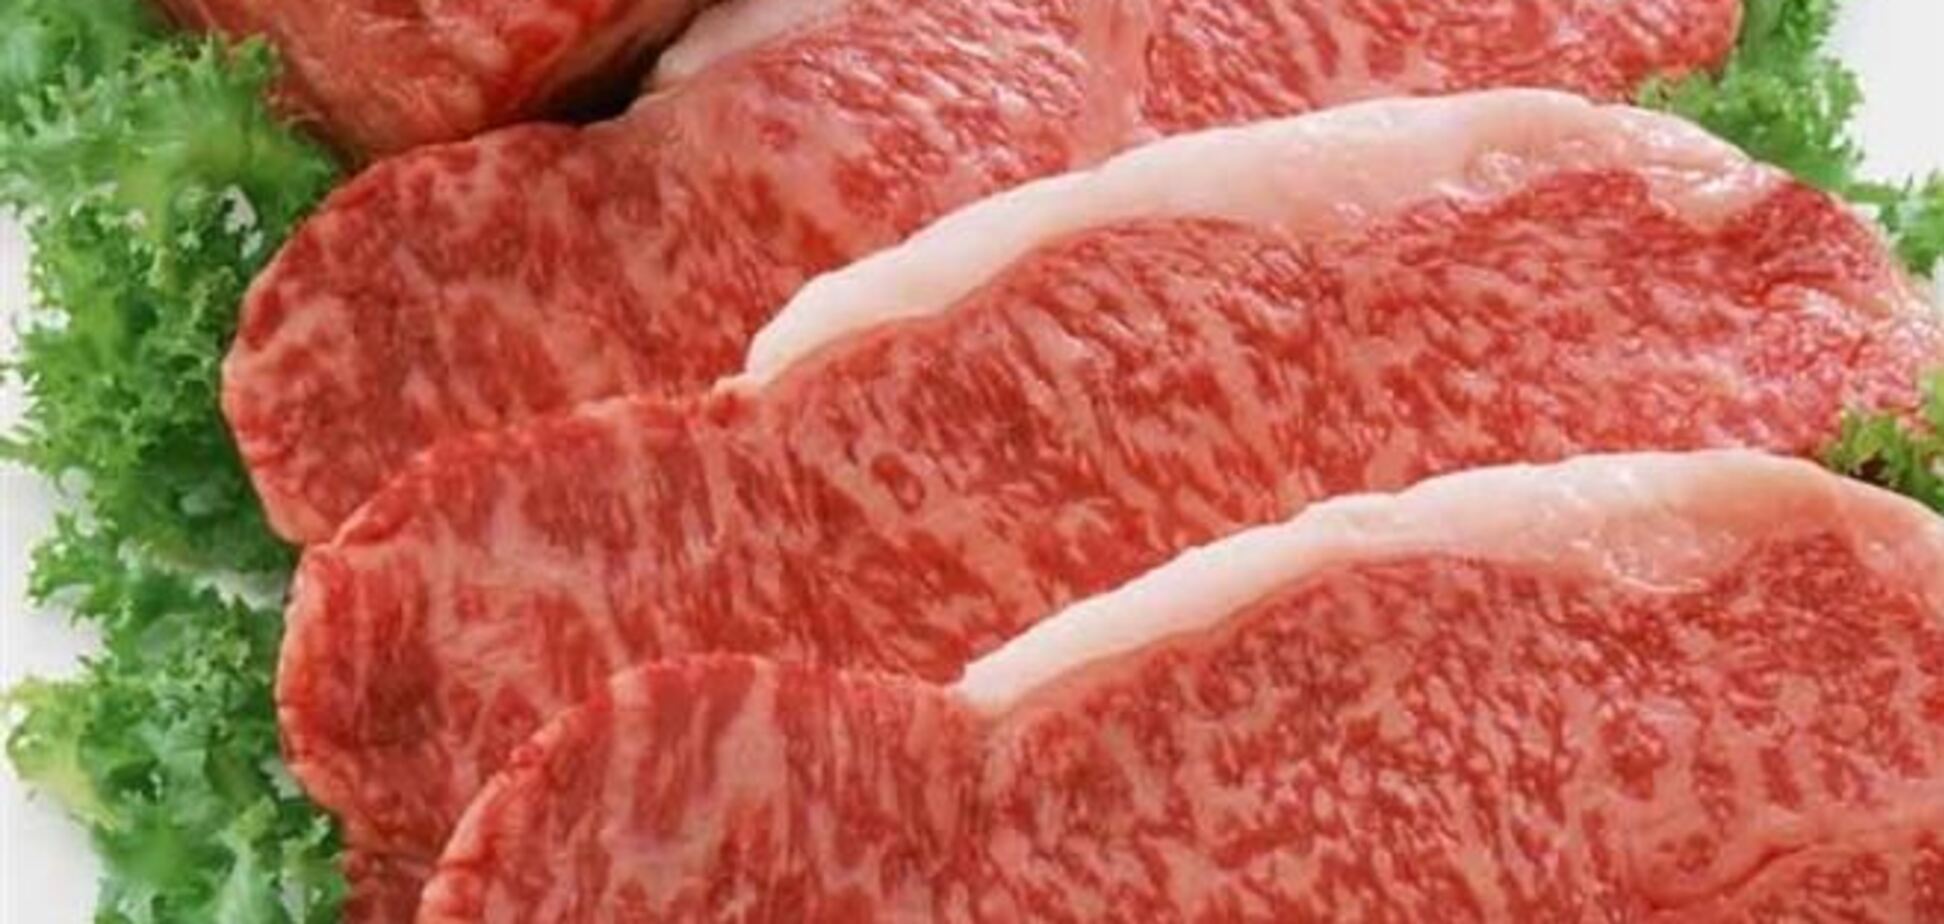 Люди с заболеваниями почек должны полностью отказаться от мяса